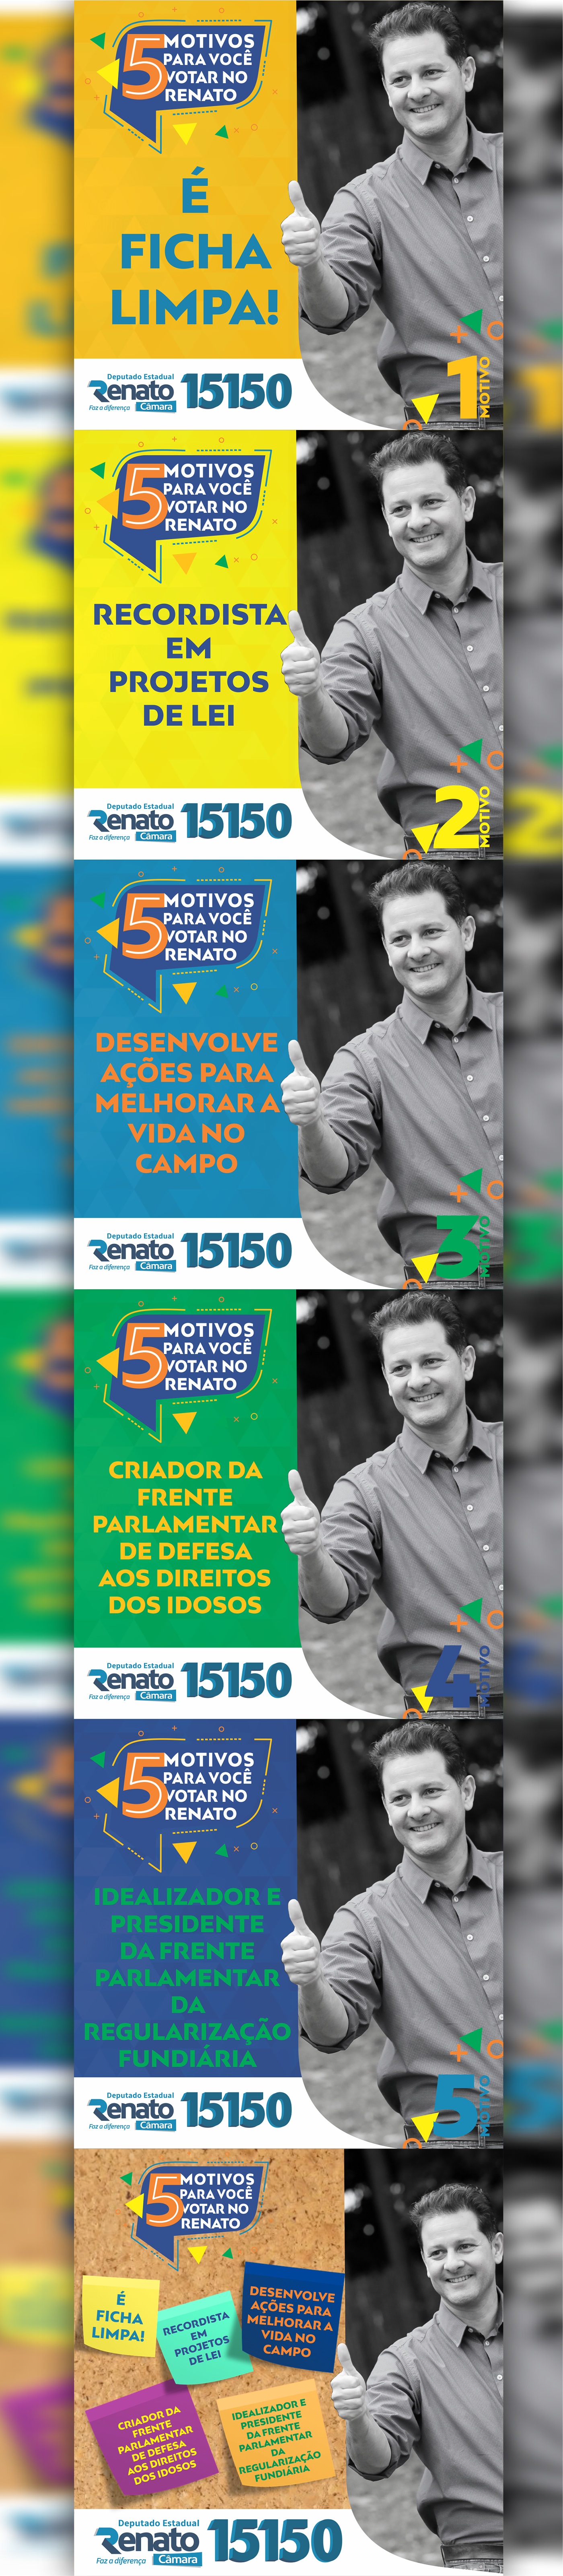 Politica deputado Renato Câmara